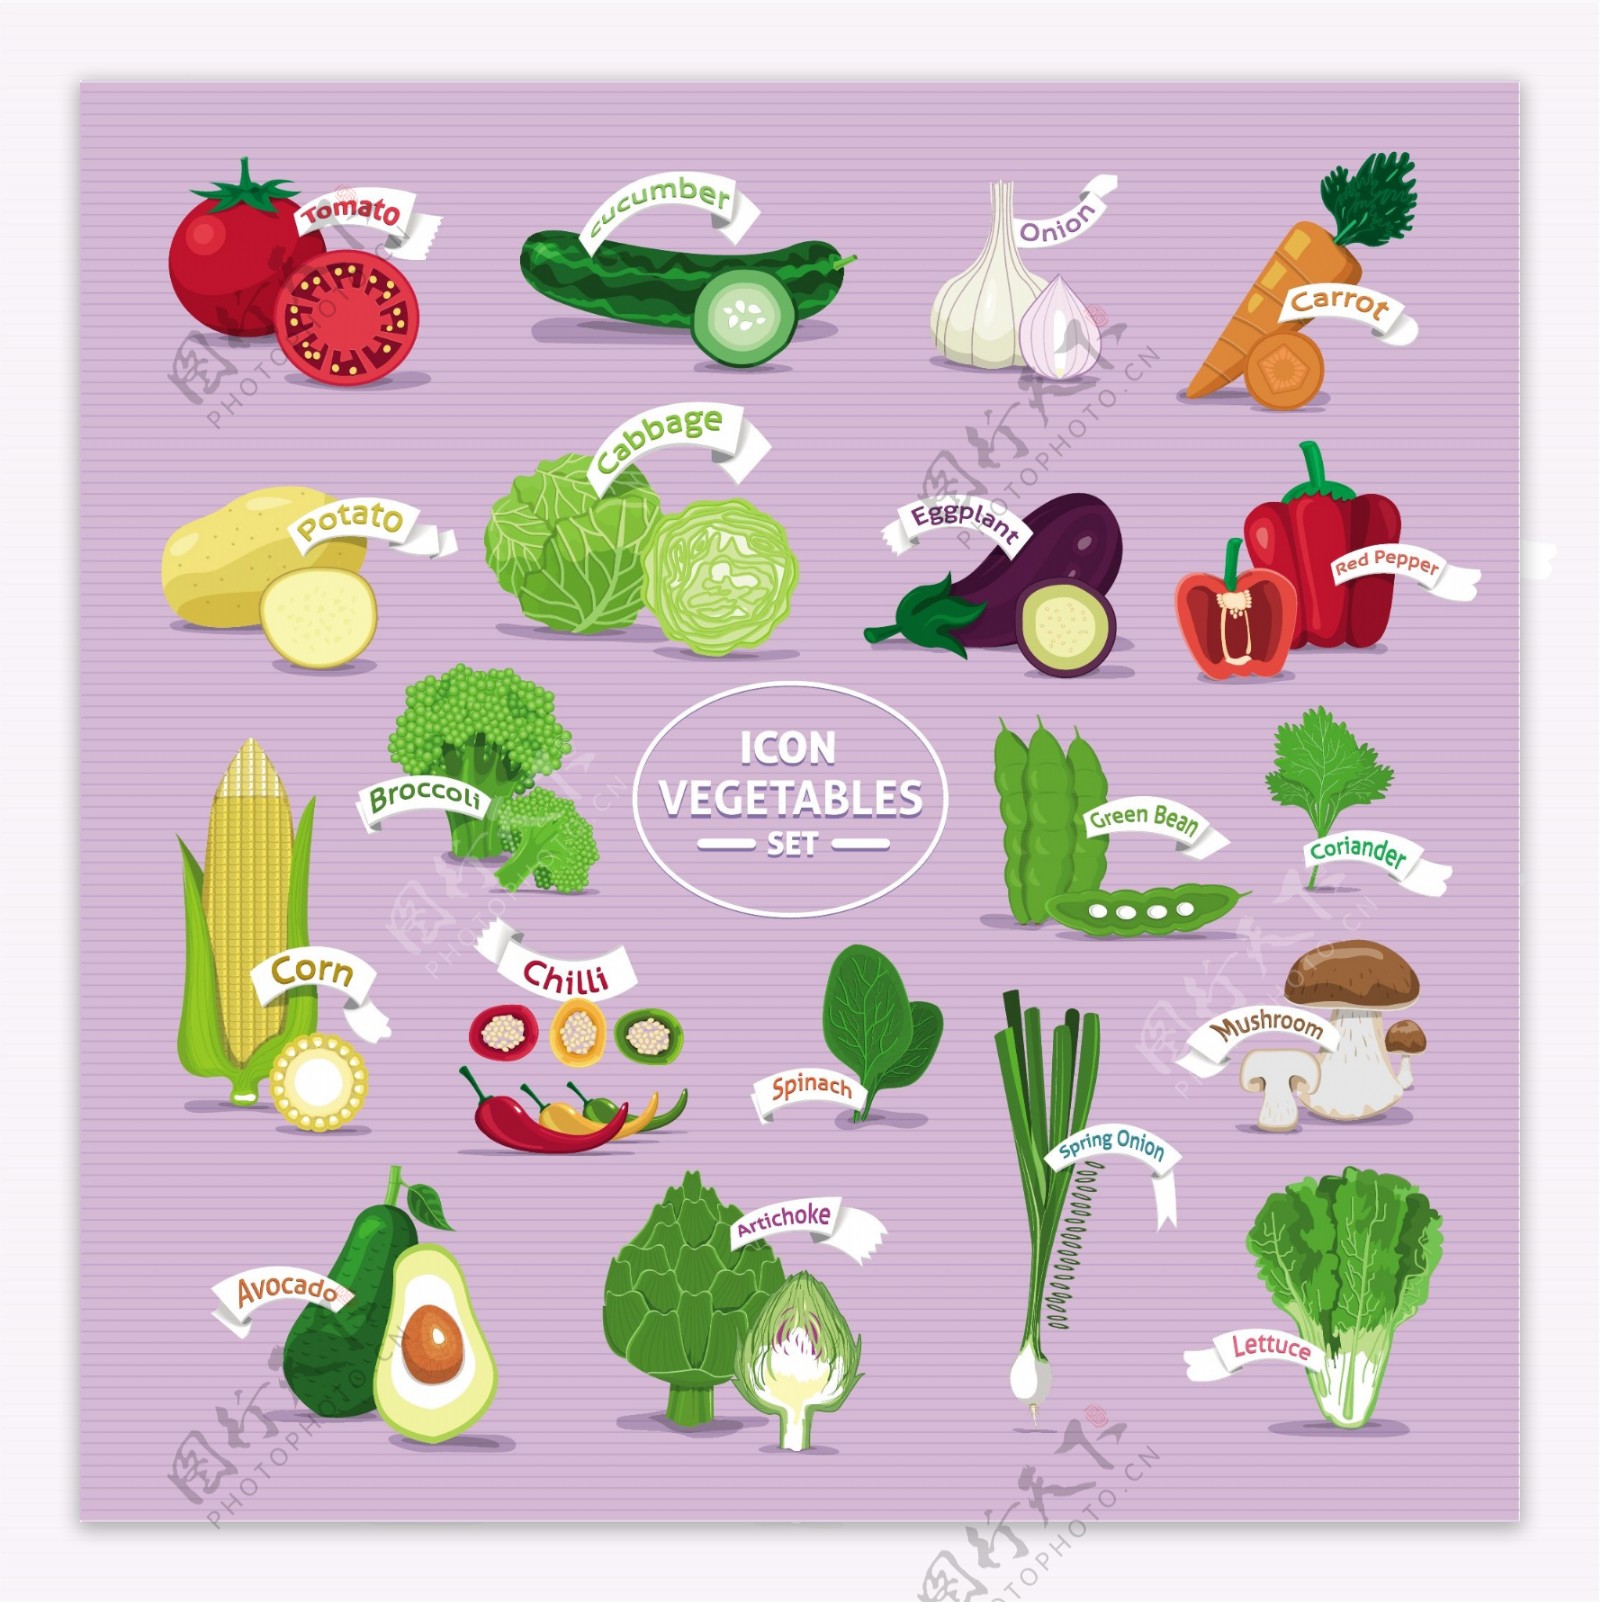 新鲜蔬菜图标